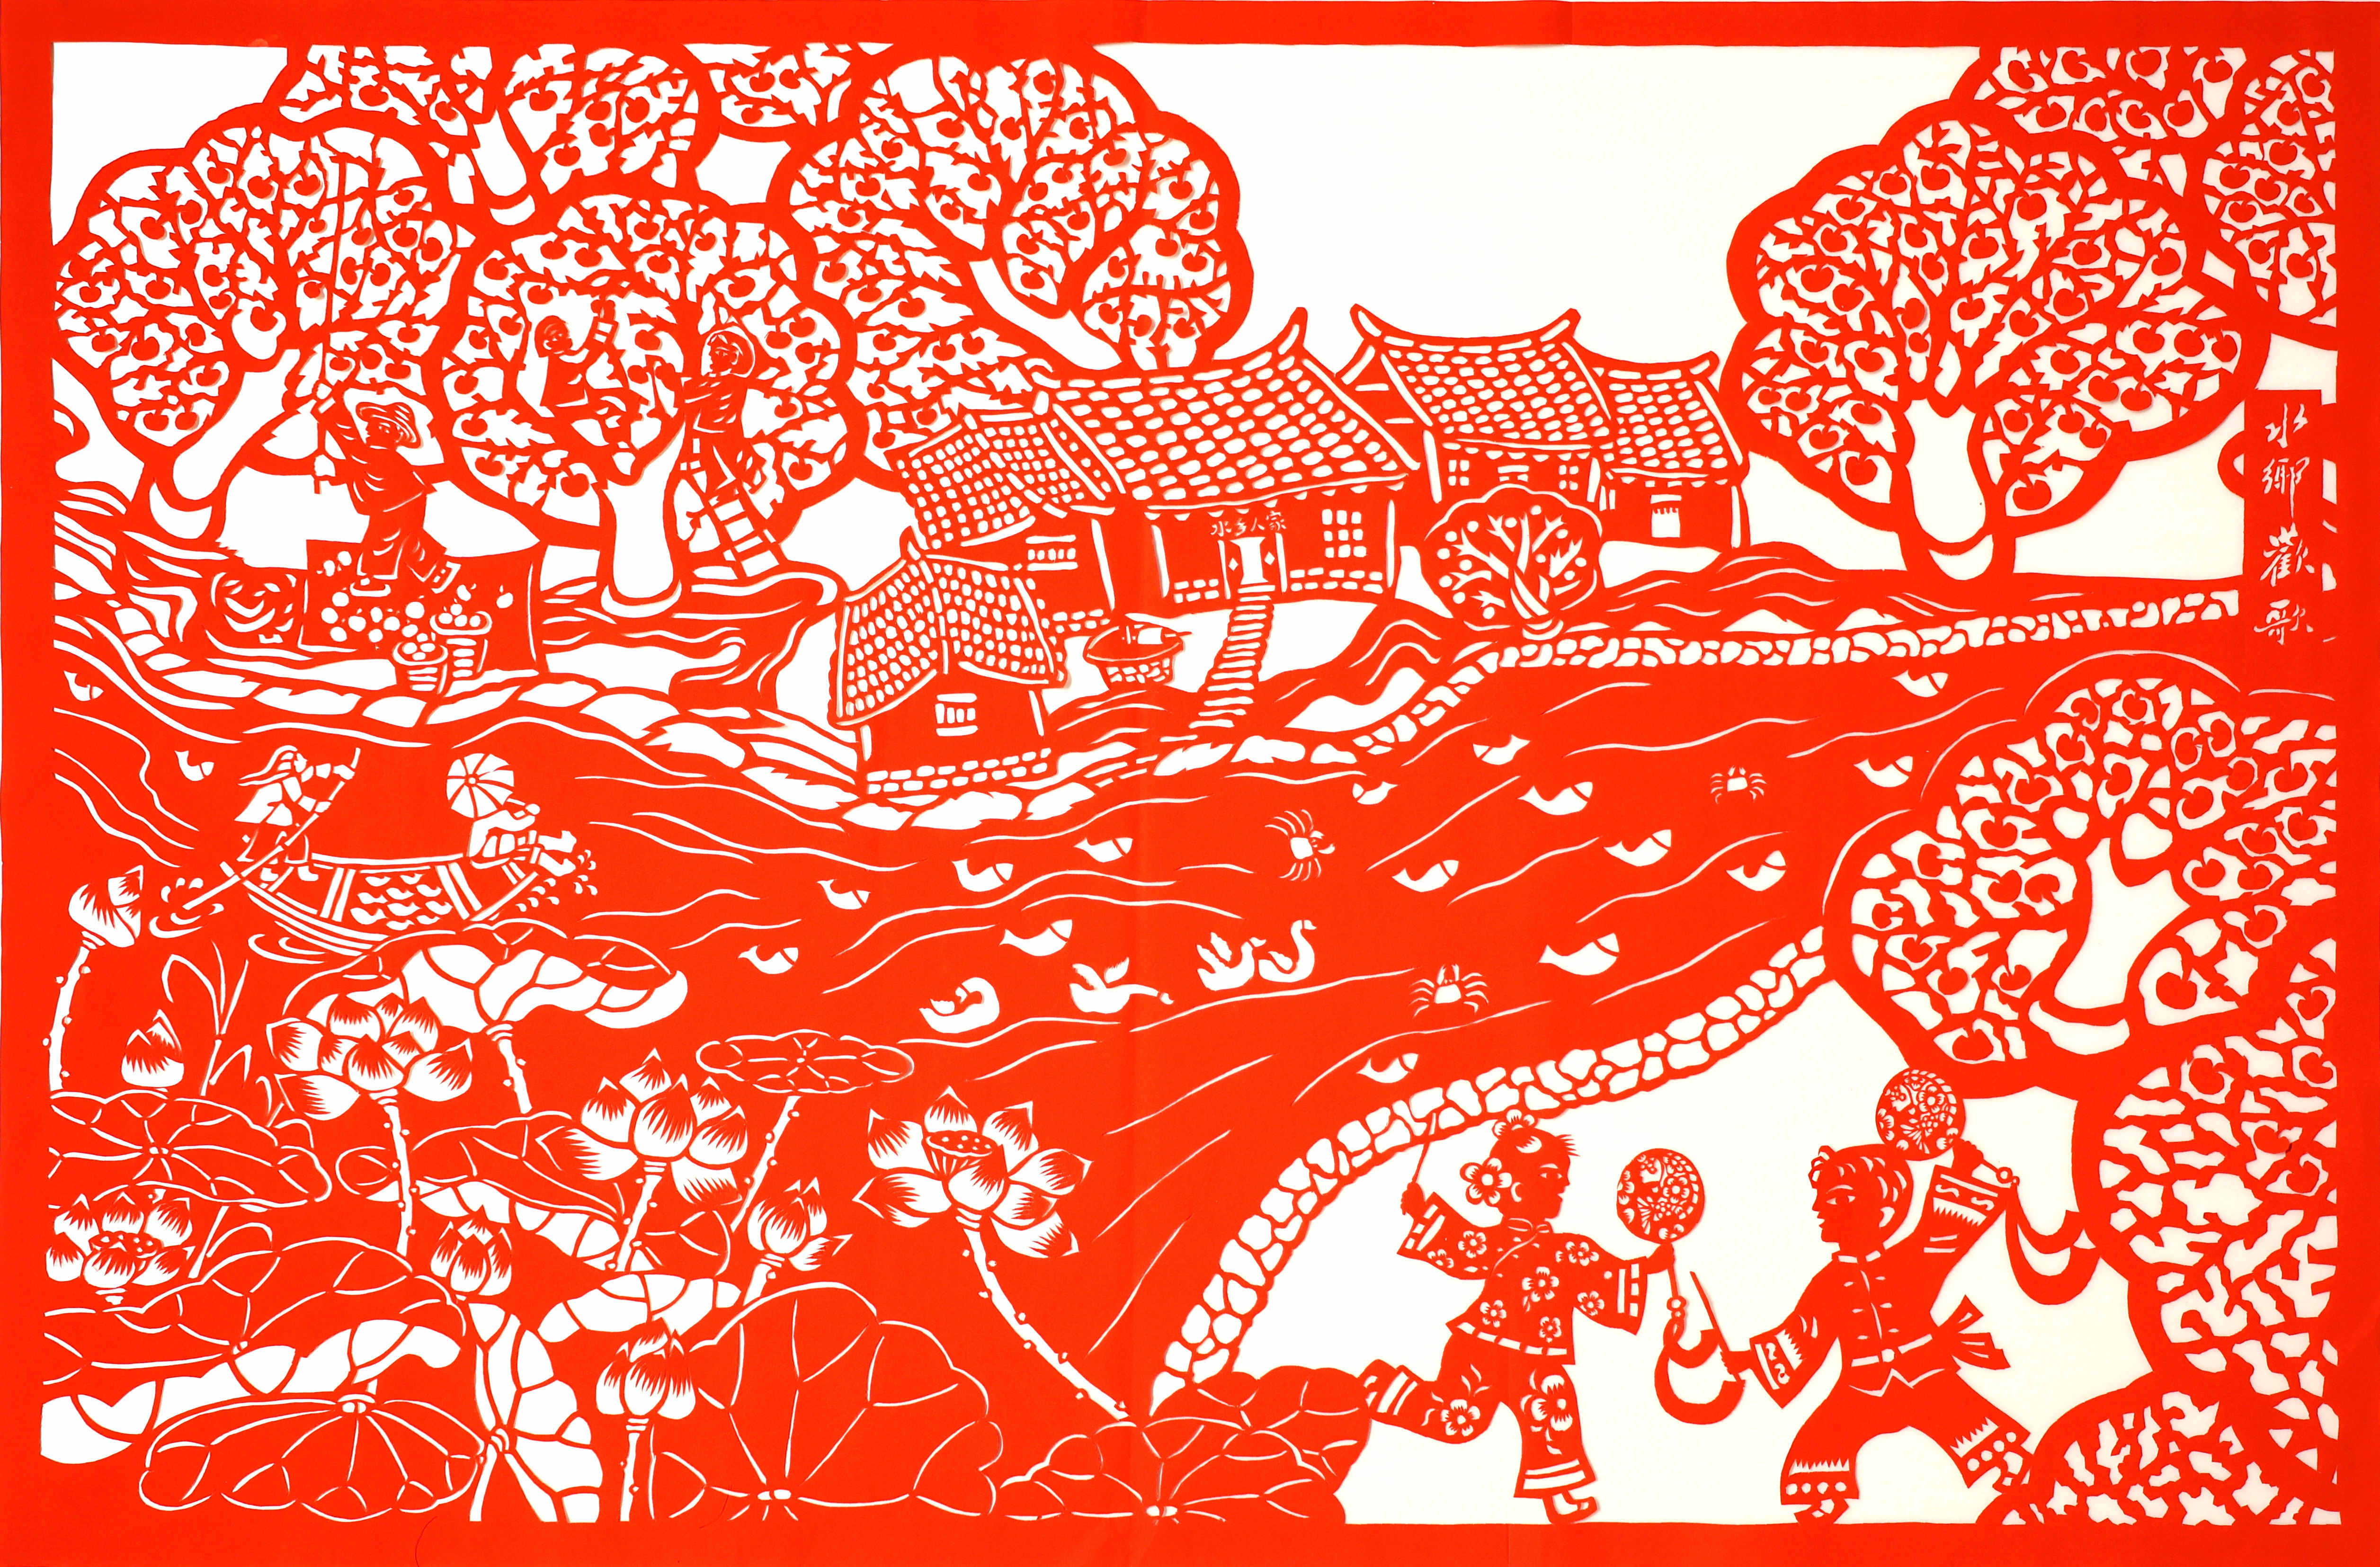 《大湖鼓韵》，作品通过剪纸的表现手法，反映了泗洪县洪泽湖区域经过生态保护后的新景象。